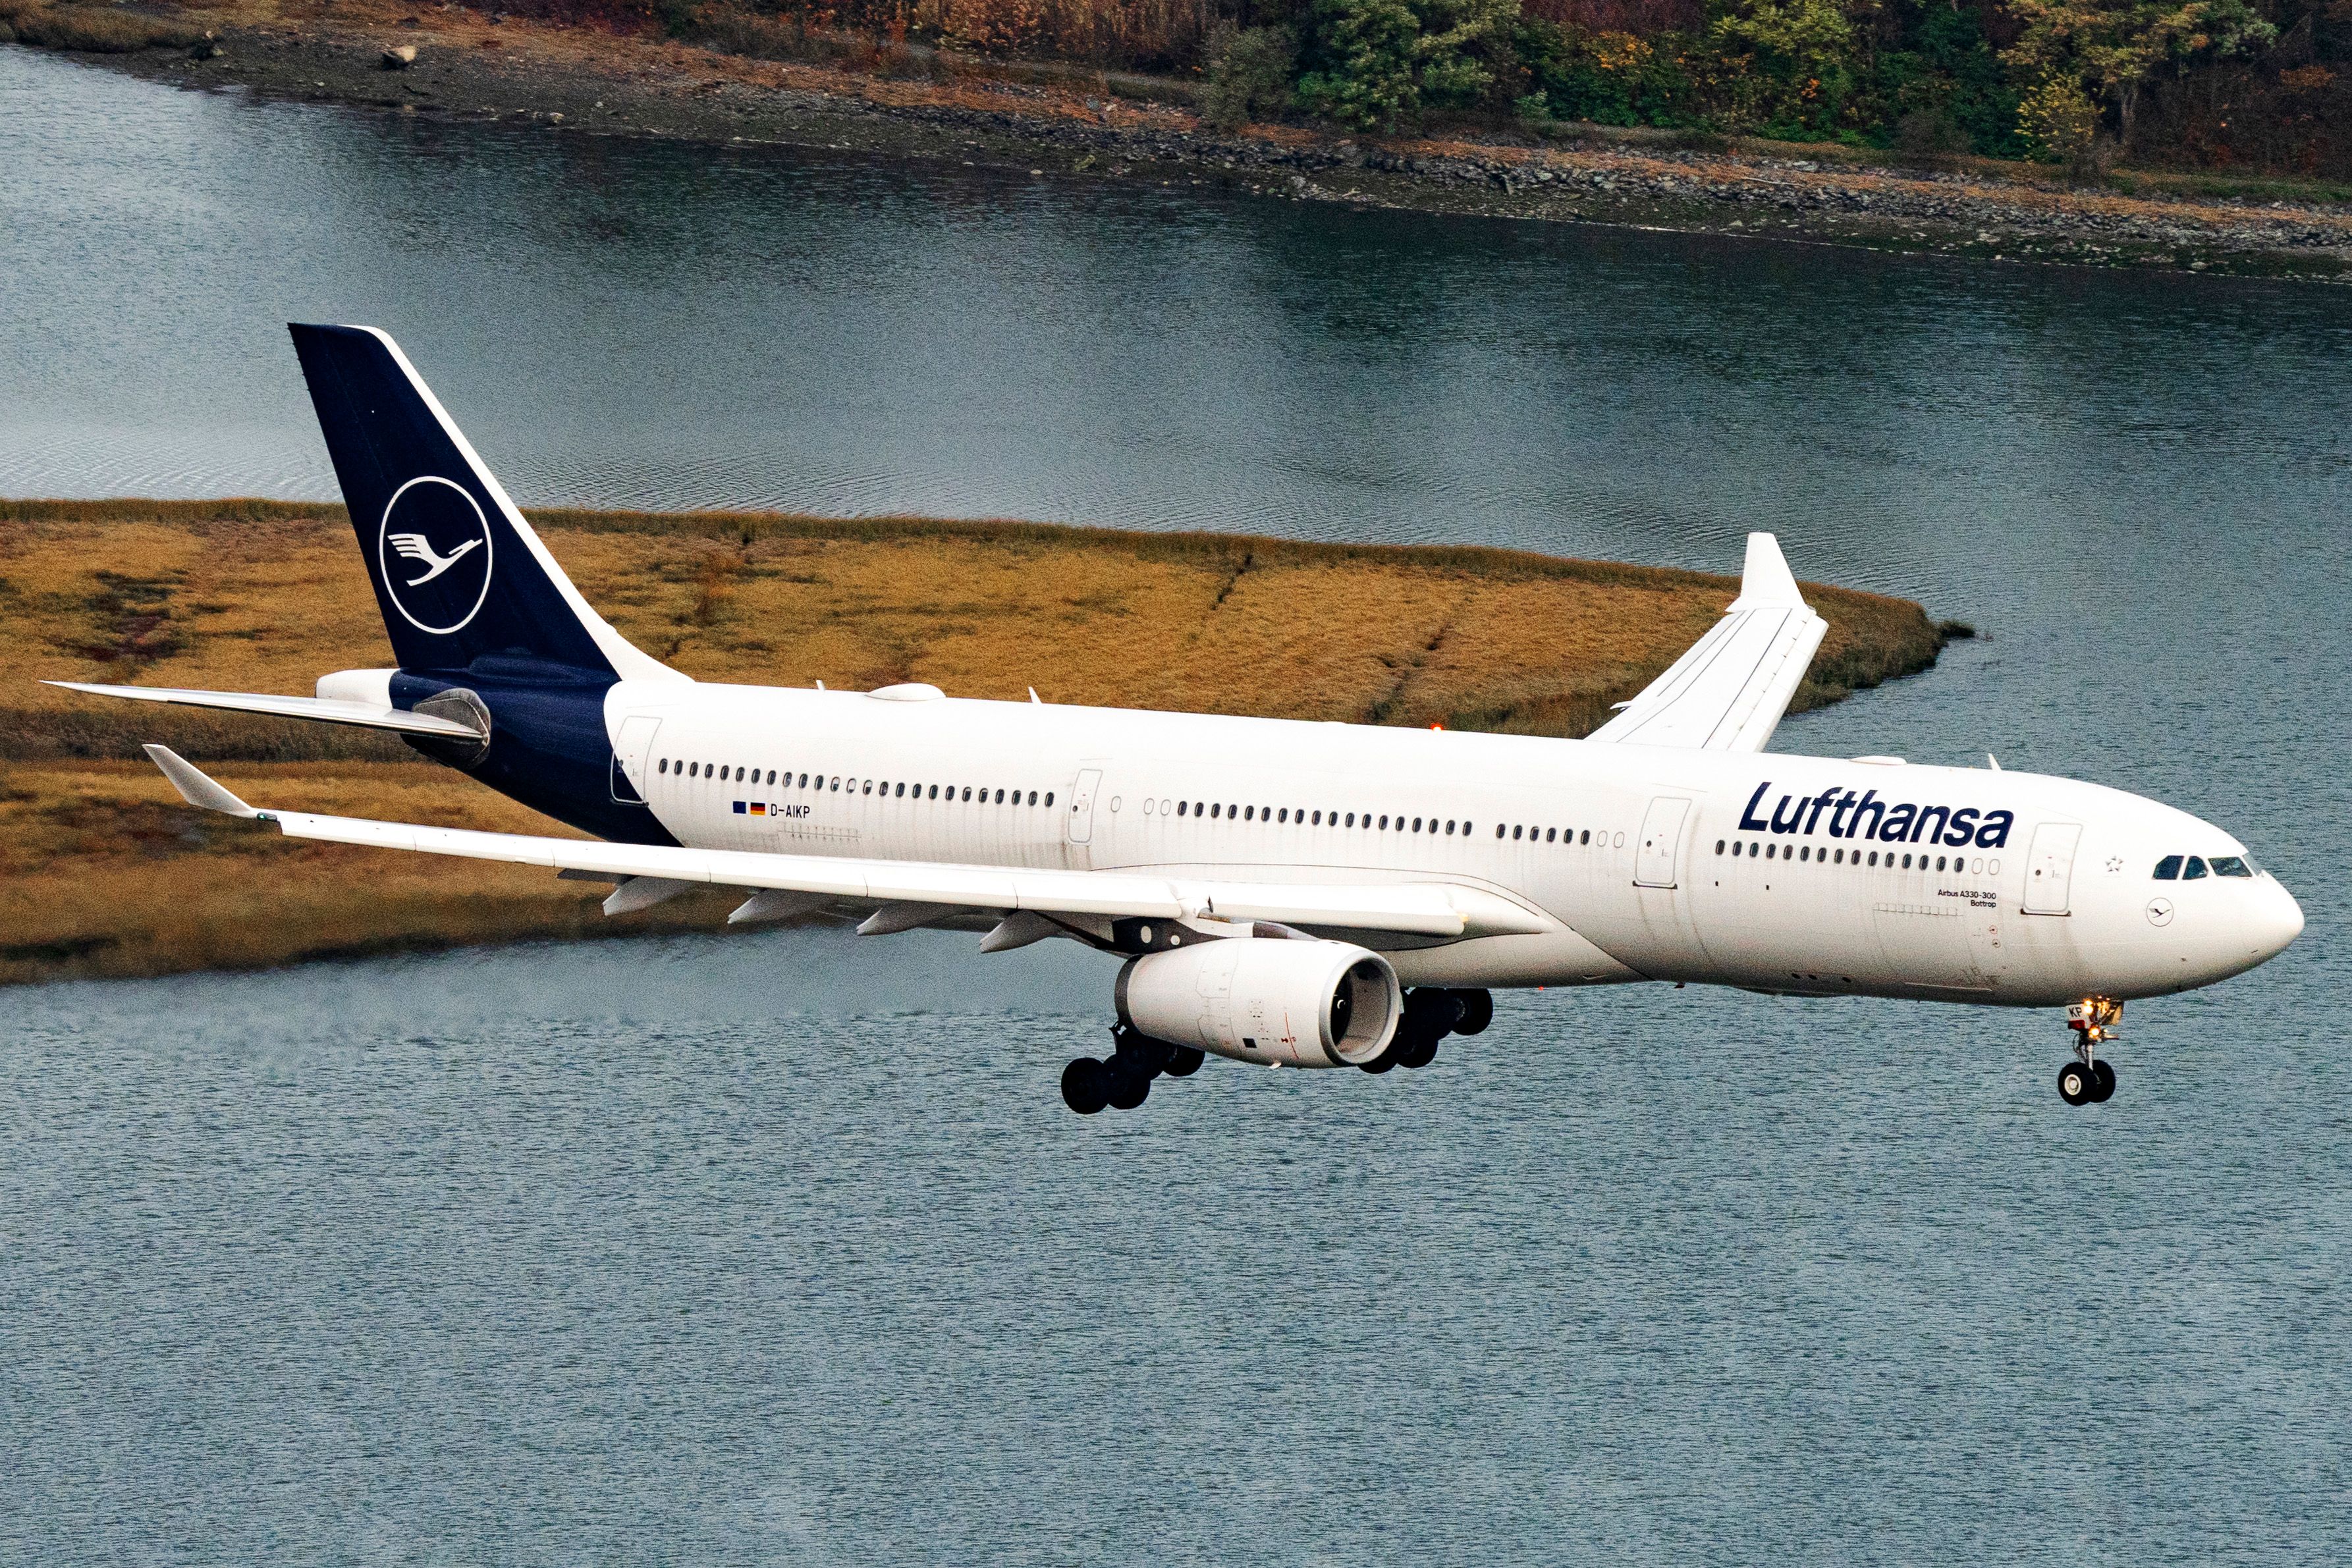 Lufthansa Airbus A330-343 landing at Boston Logan International Airport